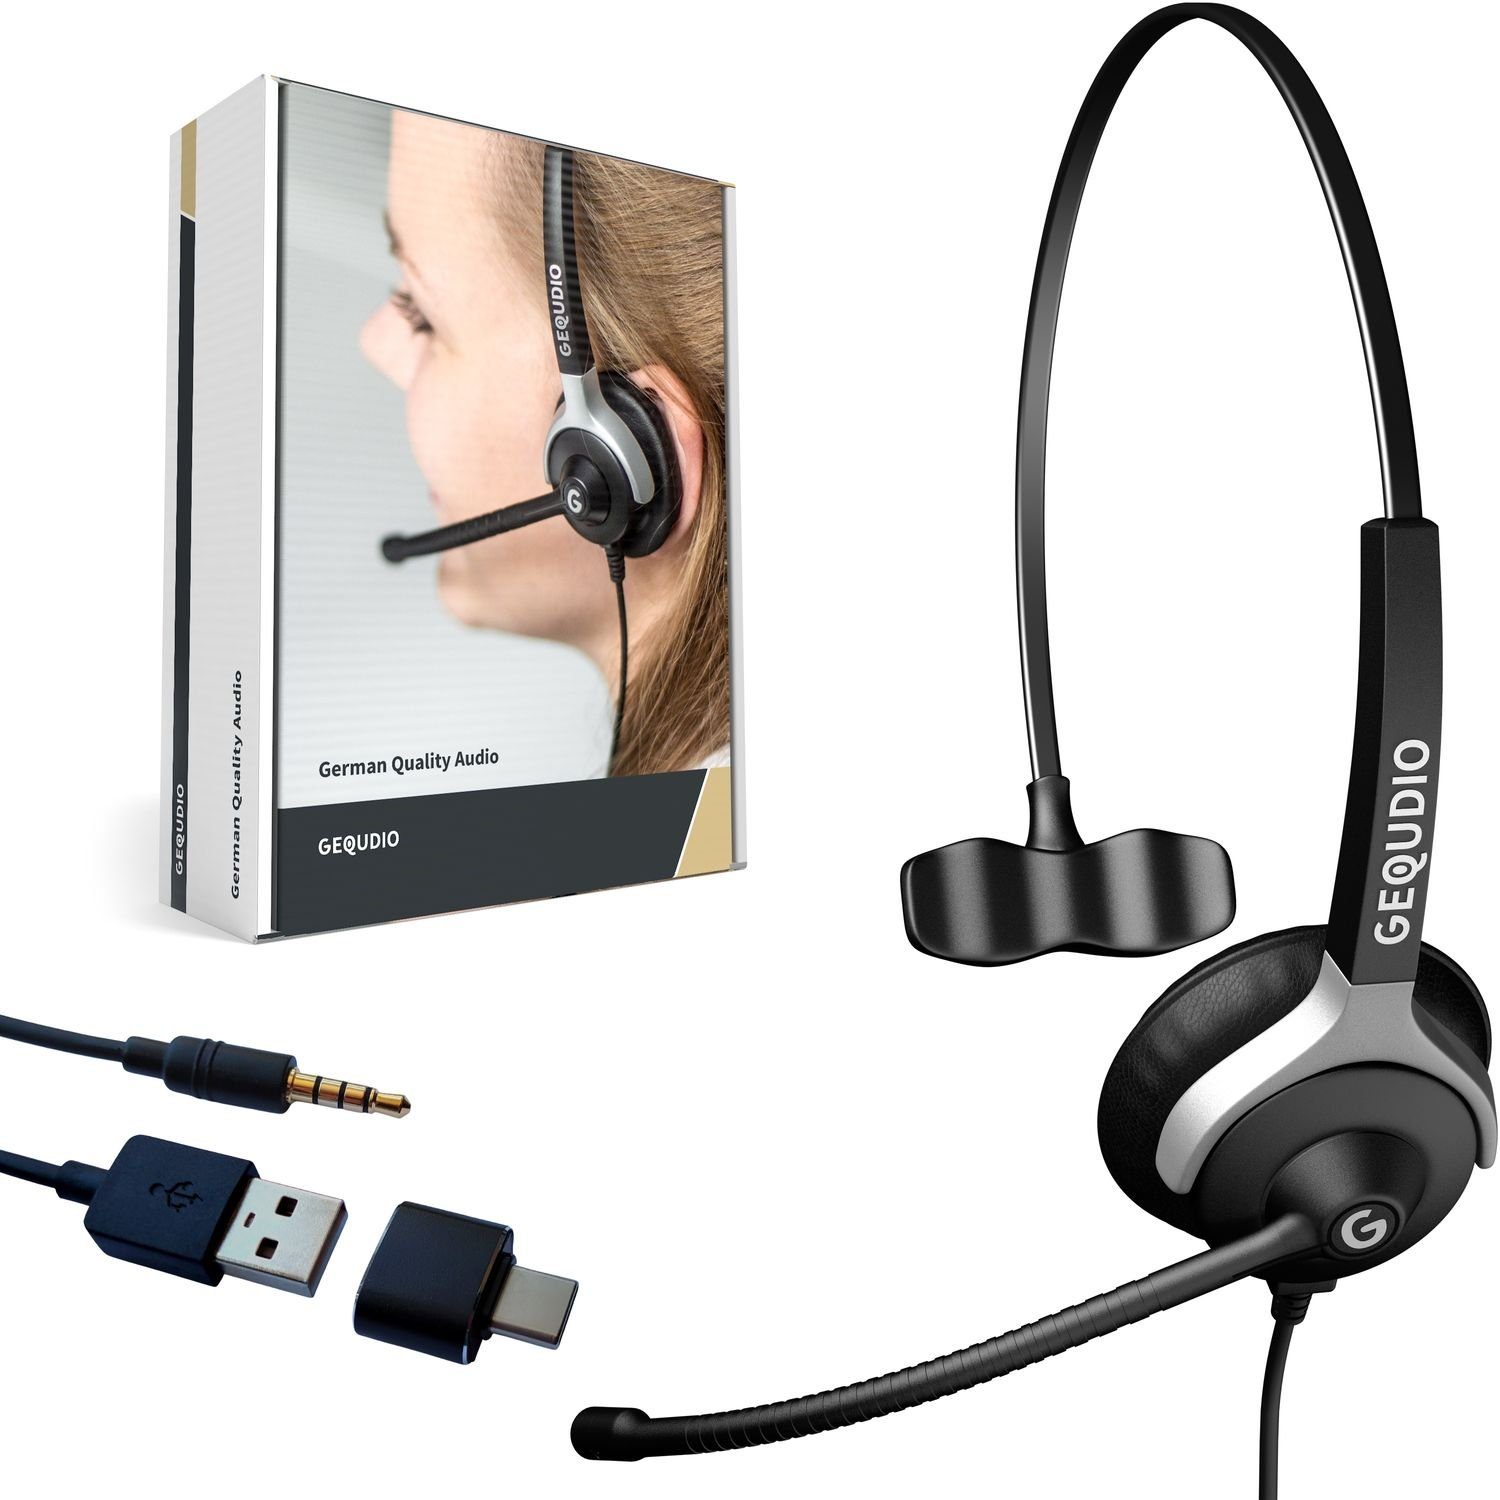 GEQUDIO für PC, Mac und Smartphone mit USB-A, USB-C Adapter und 3,5mm Klinke Headset (1-Ohr-Headset, 60g leicht, Bügel aus Federstahl, mit Wechselverschluss für mehrere Endgeräte, inklusive Anschlusskabel) | Kopfhörer